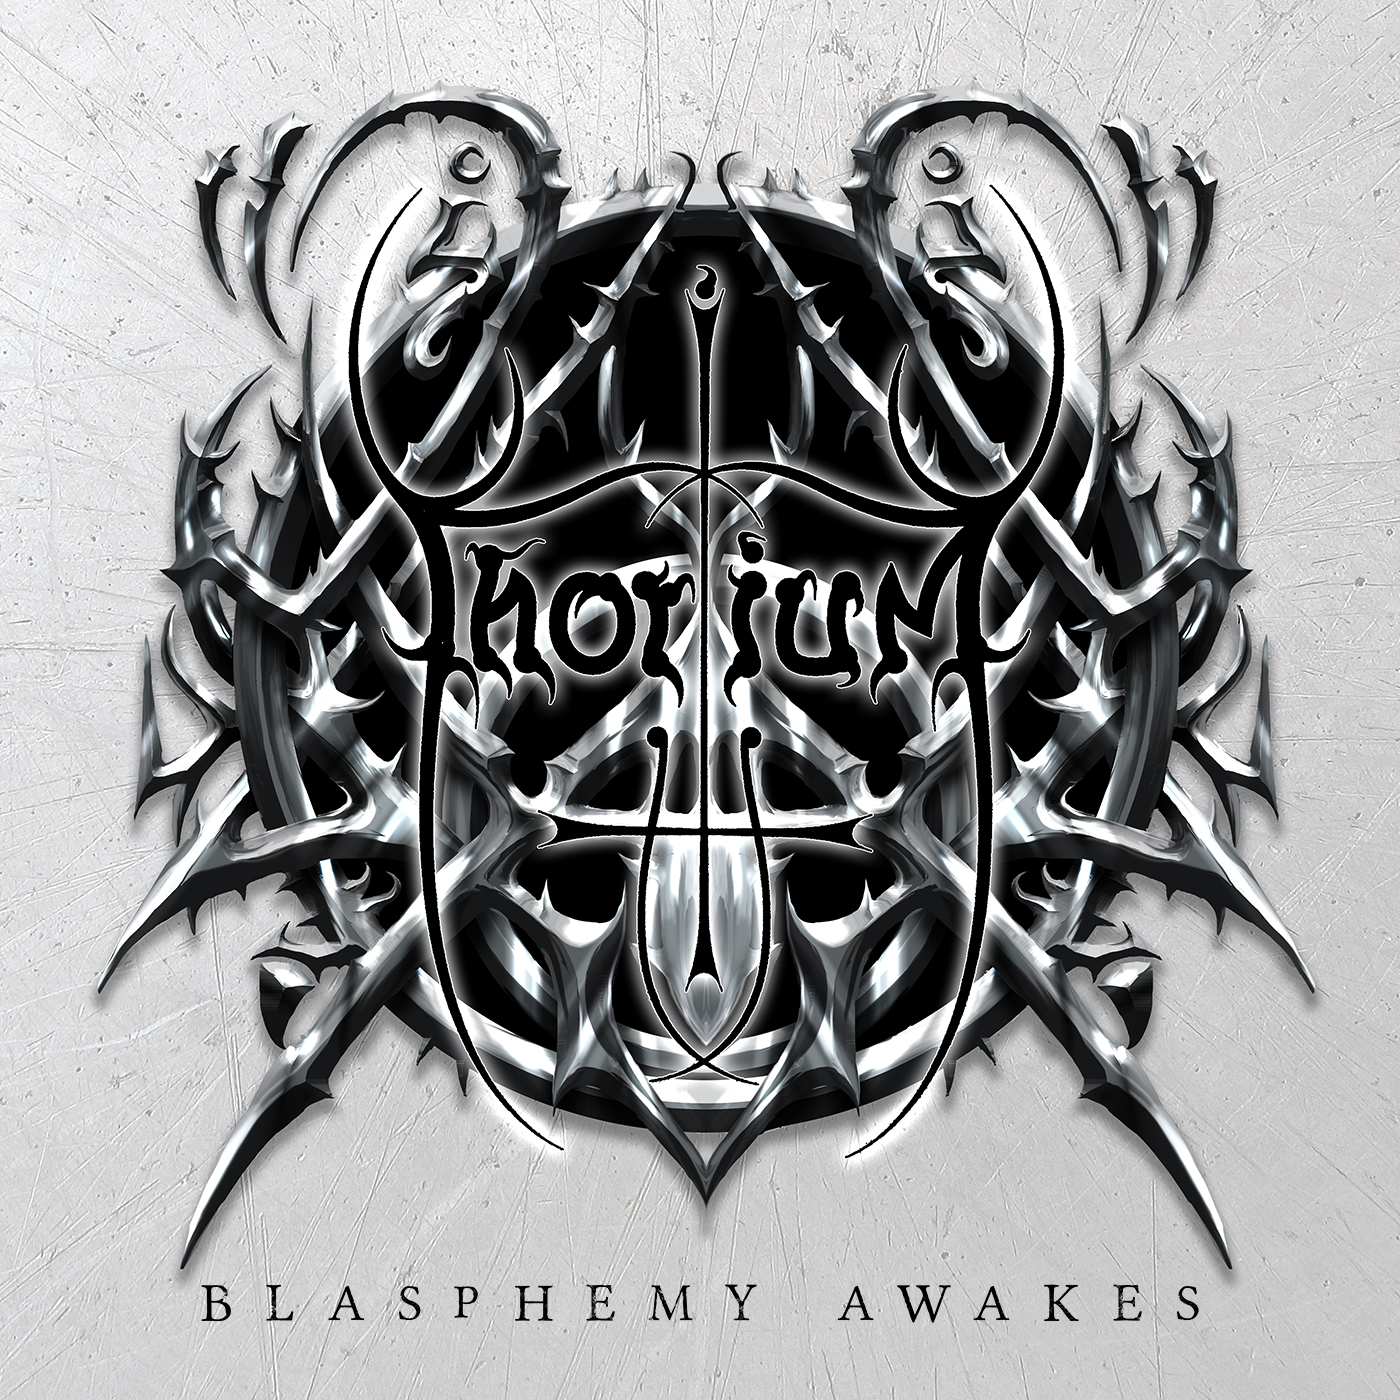 Thorium – “Blasphemy Awakes”